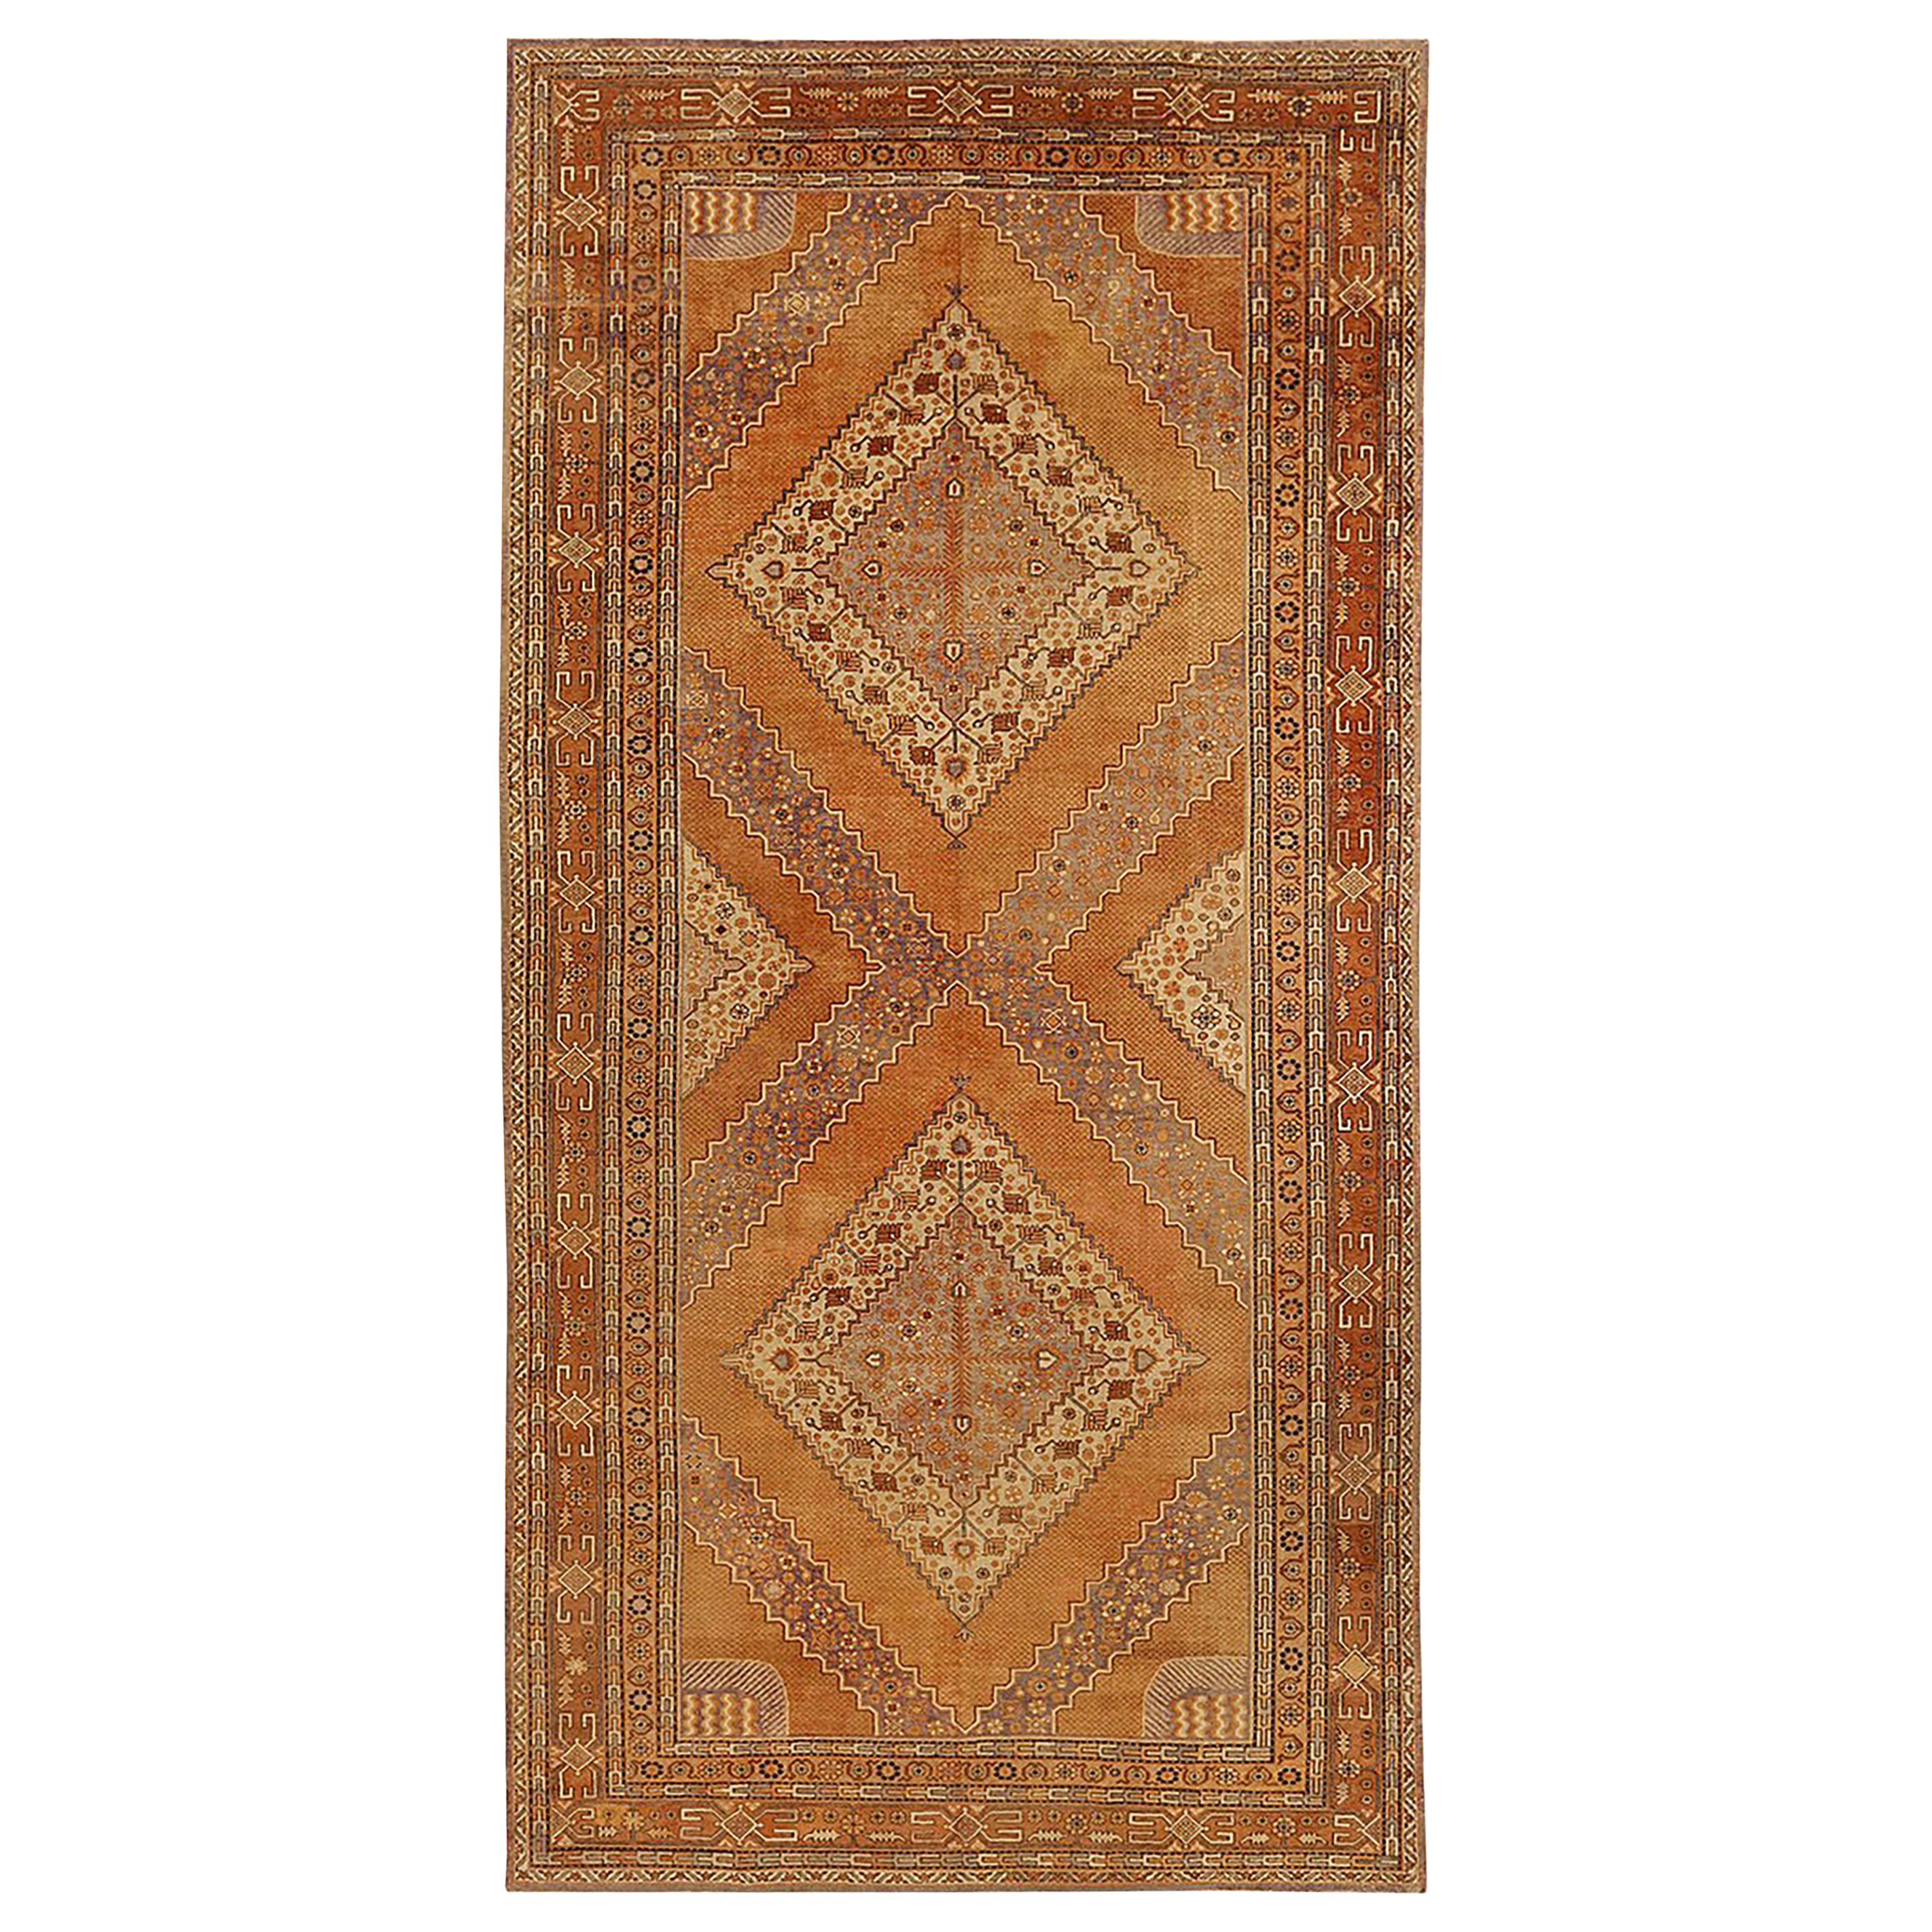 Antiker russischer Khotan-Teppich mit beige und braunen Diamantmedaillons, antik